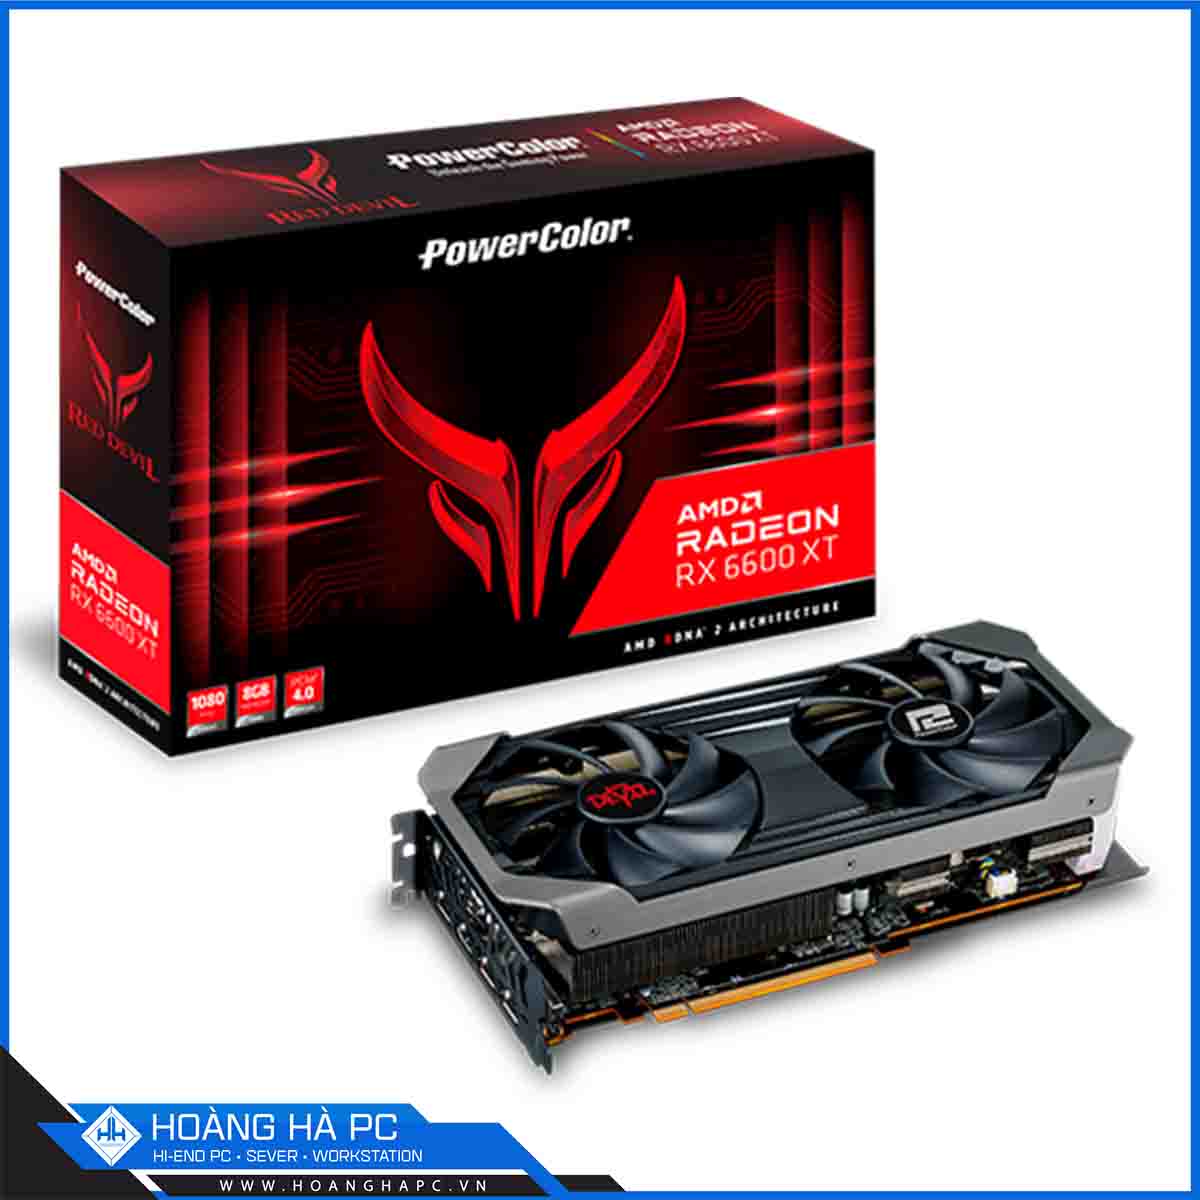 VGA Powercolor Red Devil AMD Radeon RX 6600 XT 8GB (8GB GDDR6, 128-bit, HDMI+DP, 1x8-pin+1x6-pin)